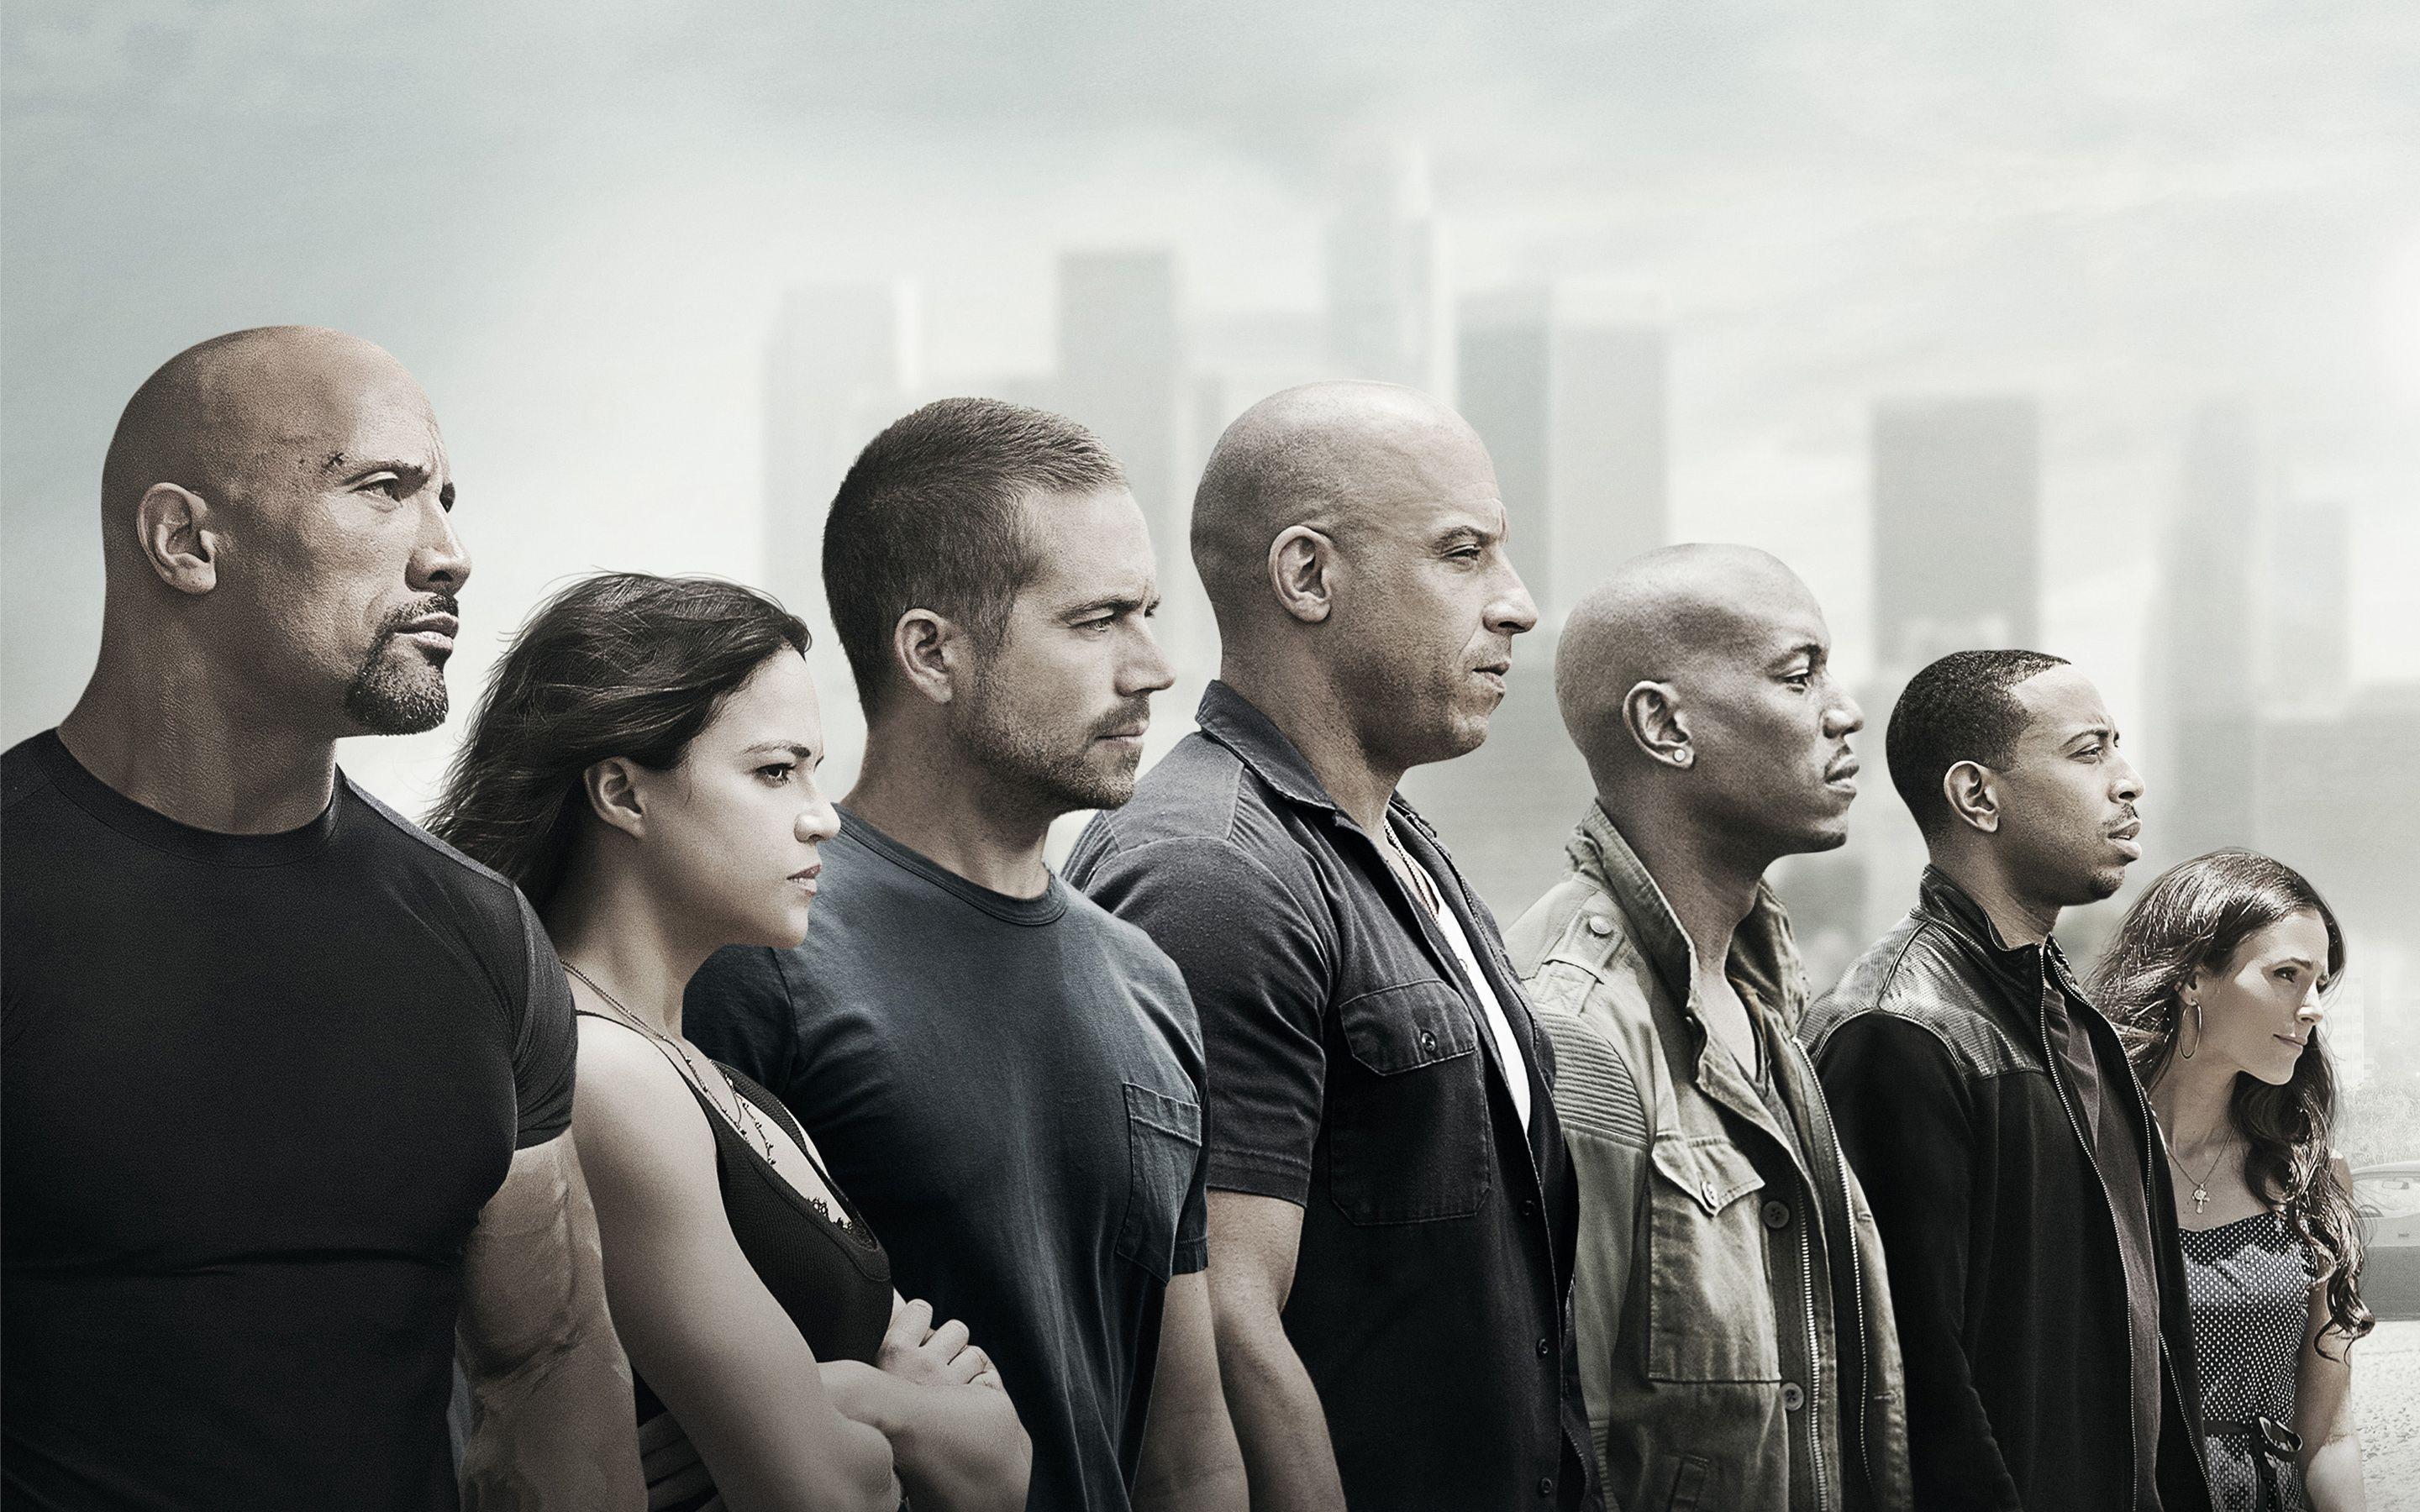 Fast and Furious 10 : Vin Diesel explique pourquoi il a rejeté un premier  script - CinéSérie